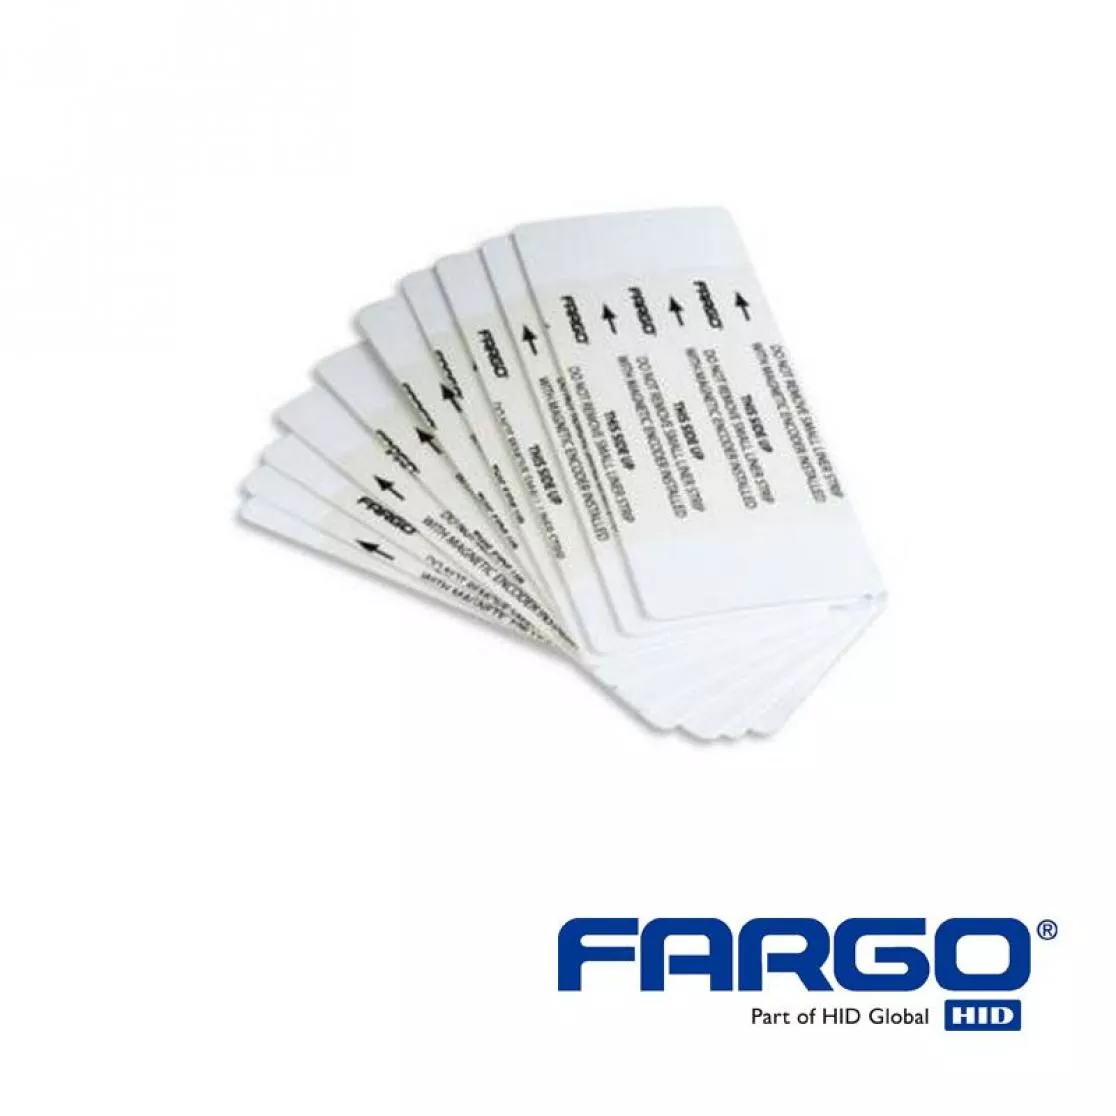 Reinigungskarten beidseitig für HID Fargo HDP8500 Kartendrucker